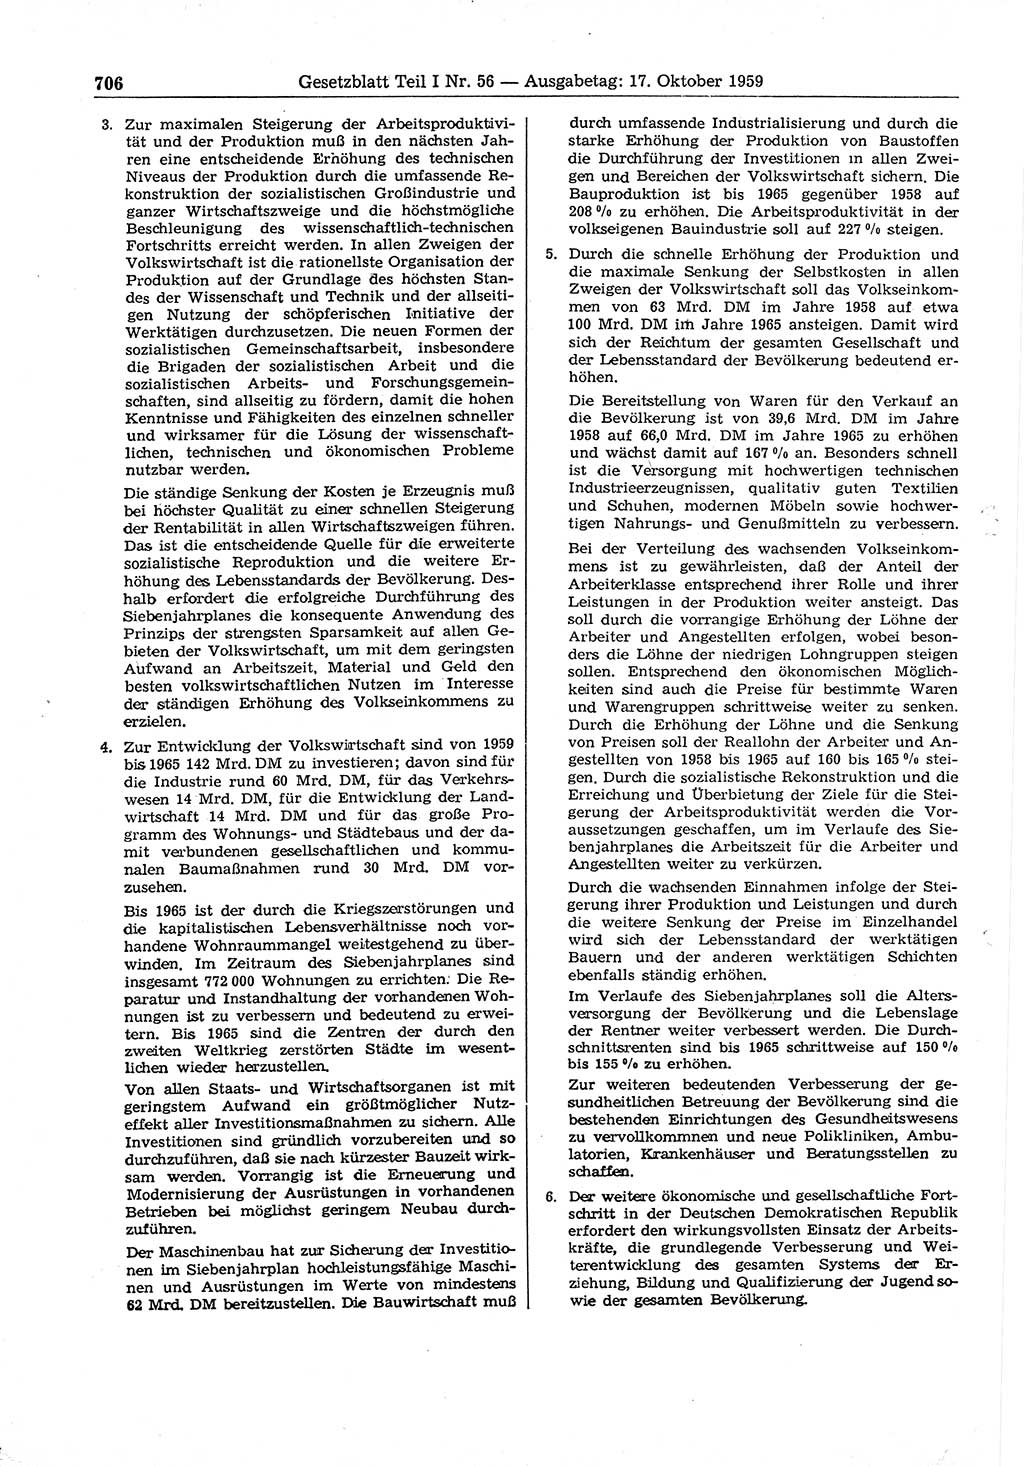 Gesetzblatt (GBl.) der Deutschen Demokratischen Republik (DDR) Teil Ⅰ 1959, Seite 706 (GBl. DDR Ⅰ 1959, S. 706)